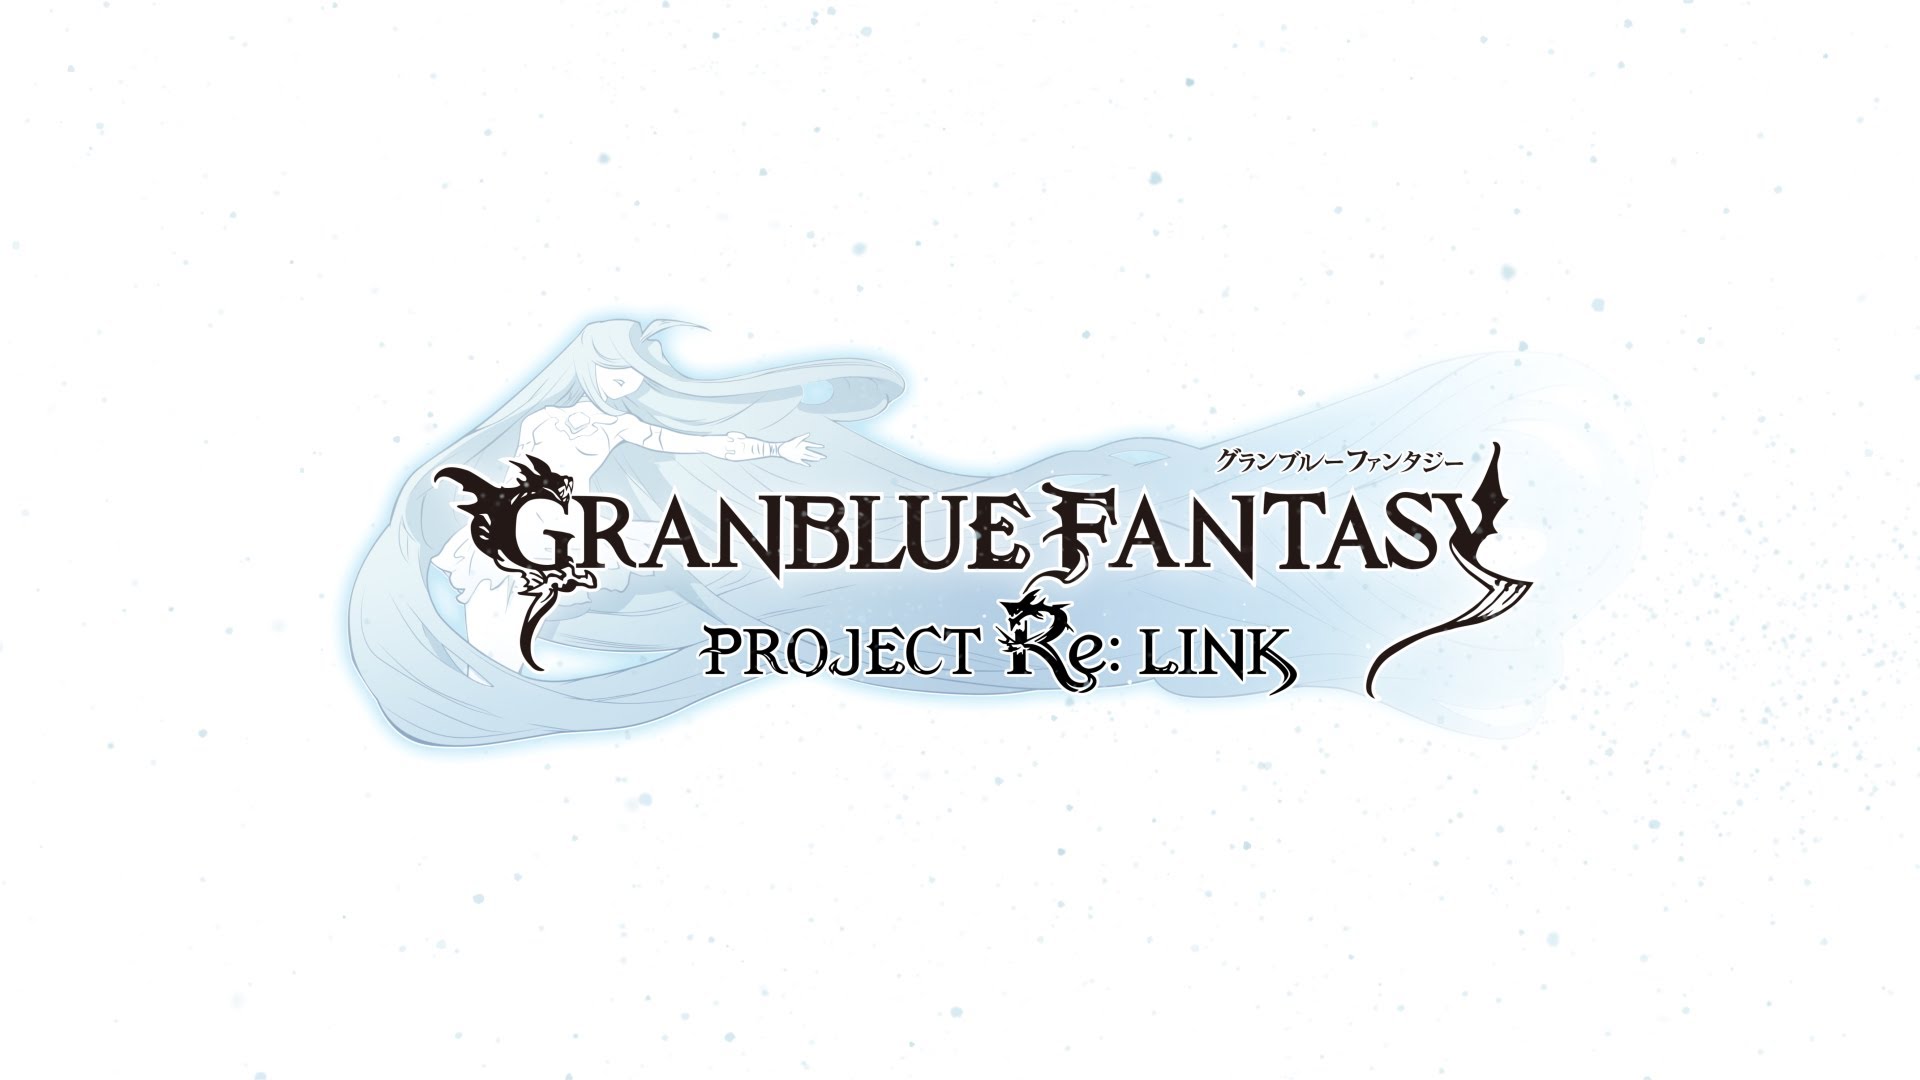 پلتفرم‌ مقصد عنوان Granblue Fantasy Project Re: Link به همراه تریلر جدیدی در توکیو گیم شو ۲۰۱۶ اعلام شد